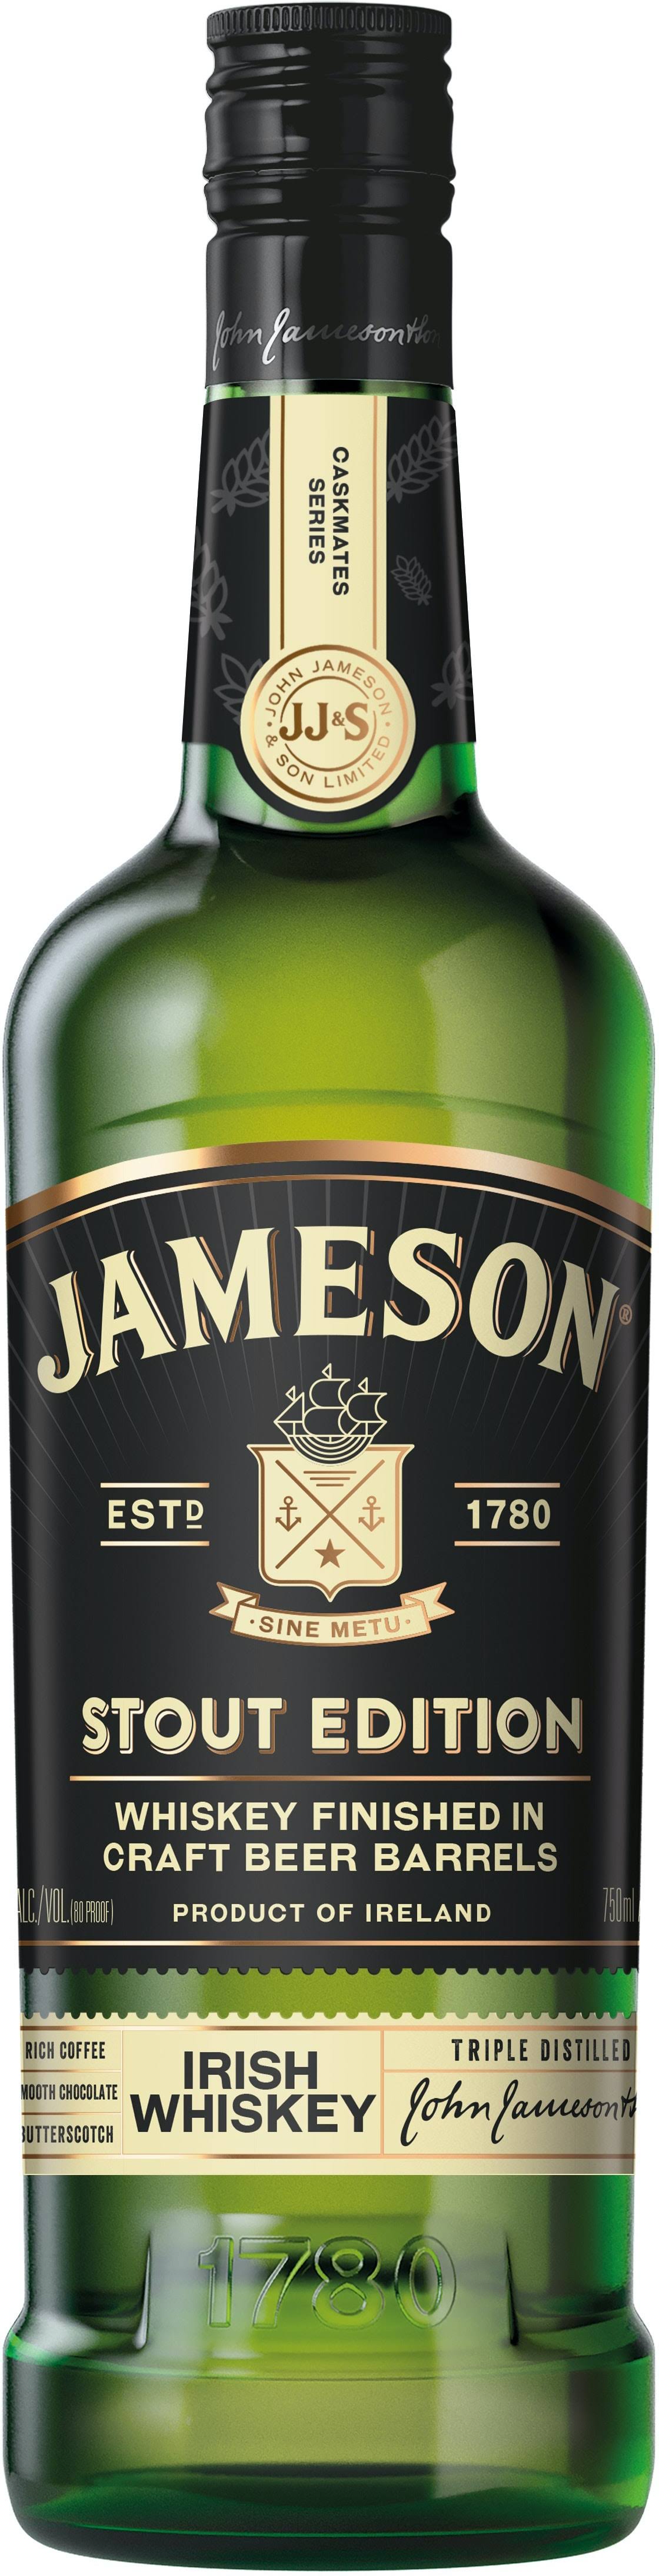 Jameson - Caskmates Stout Edition 700ml